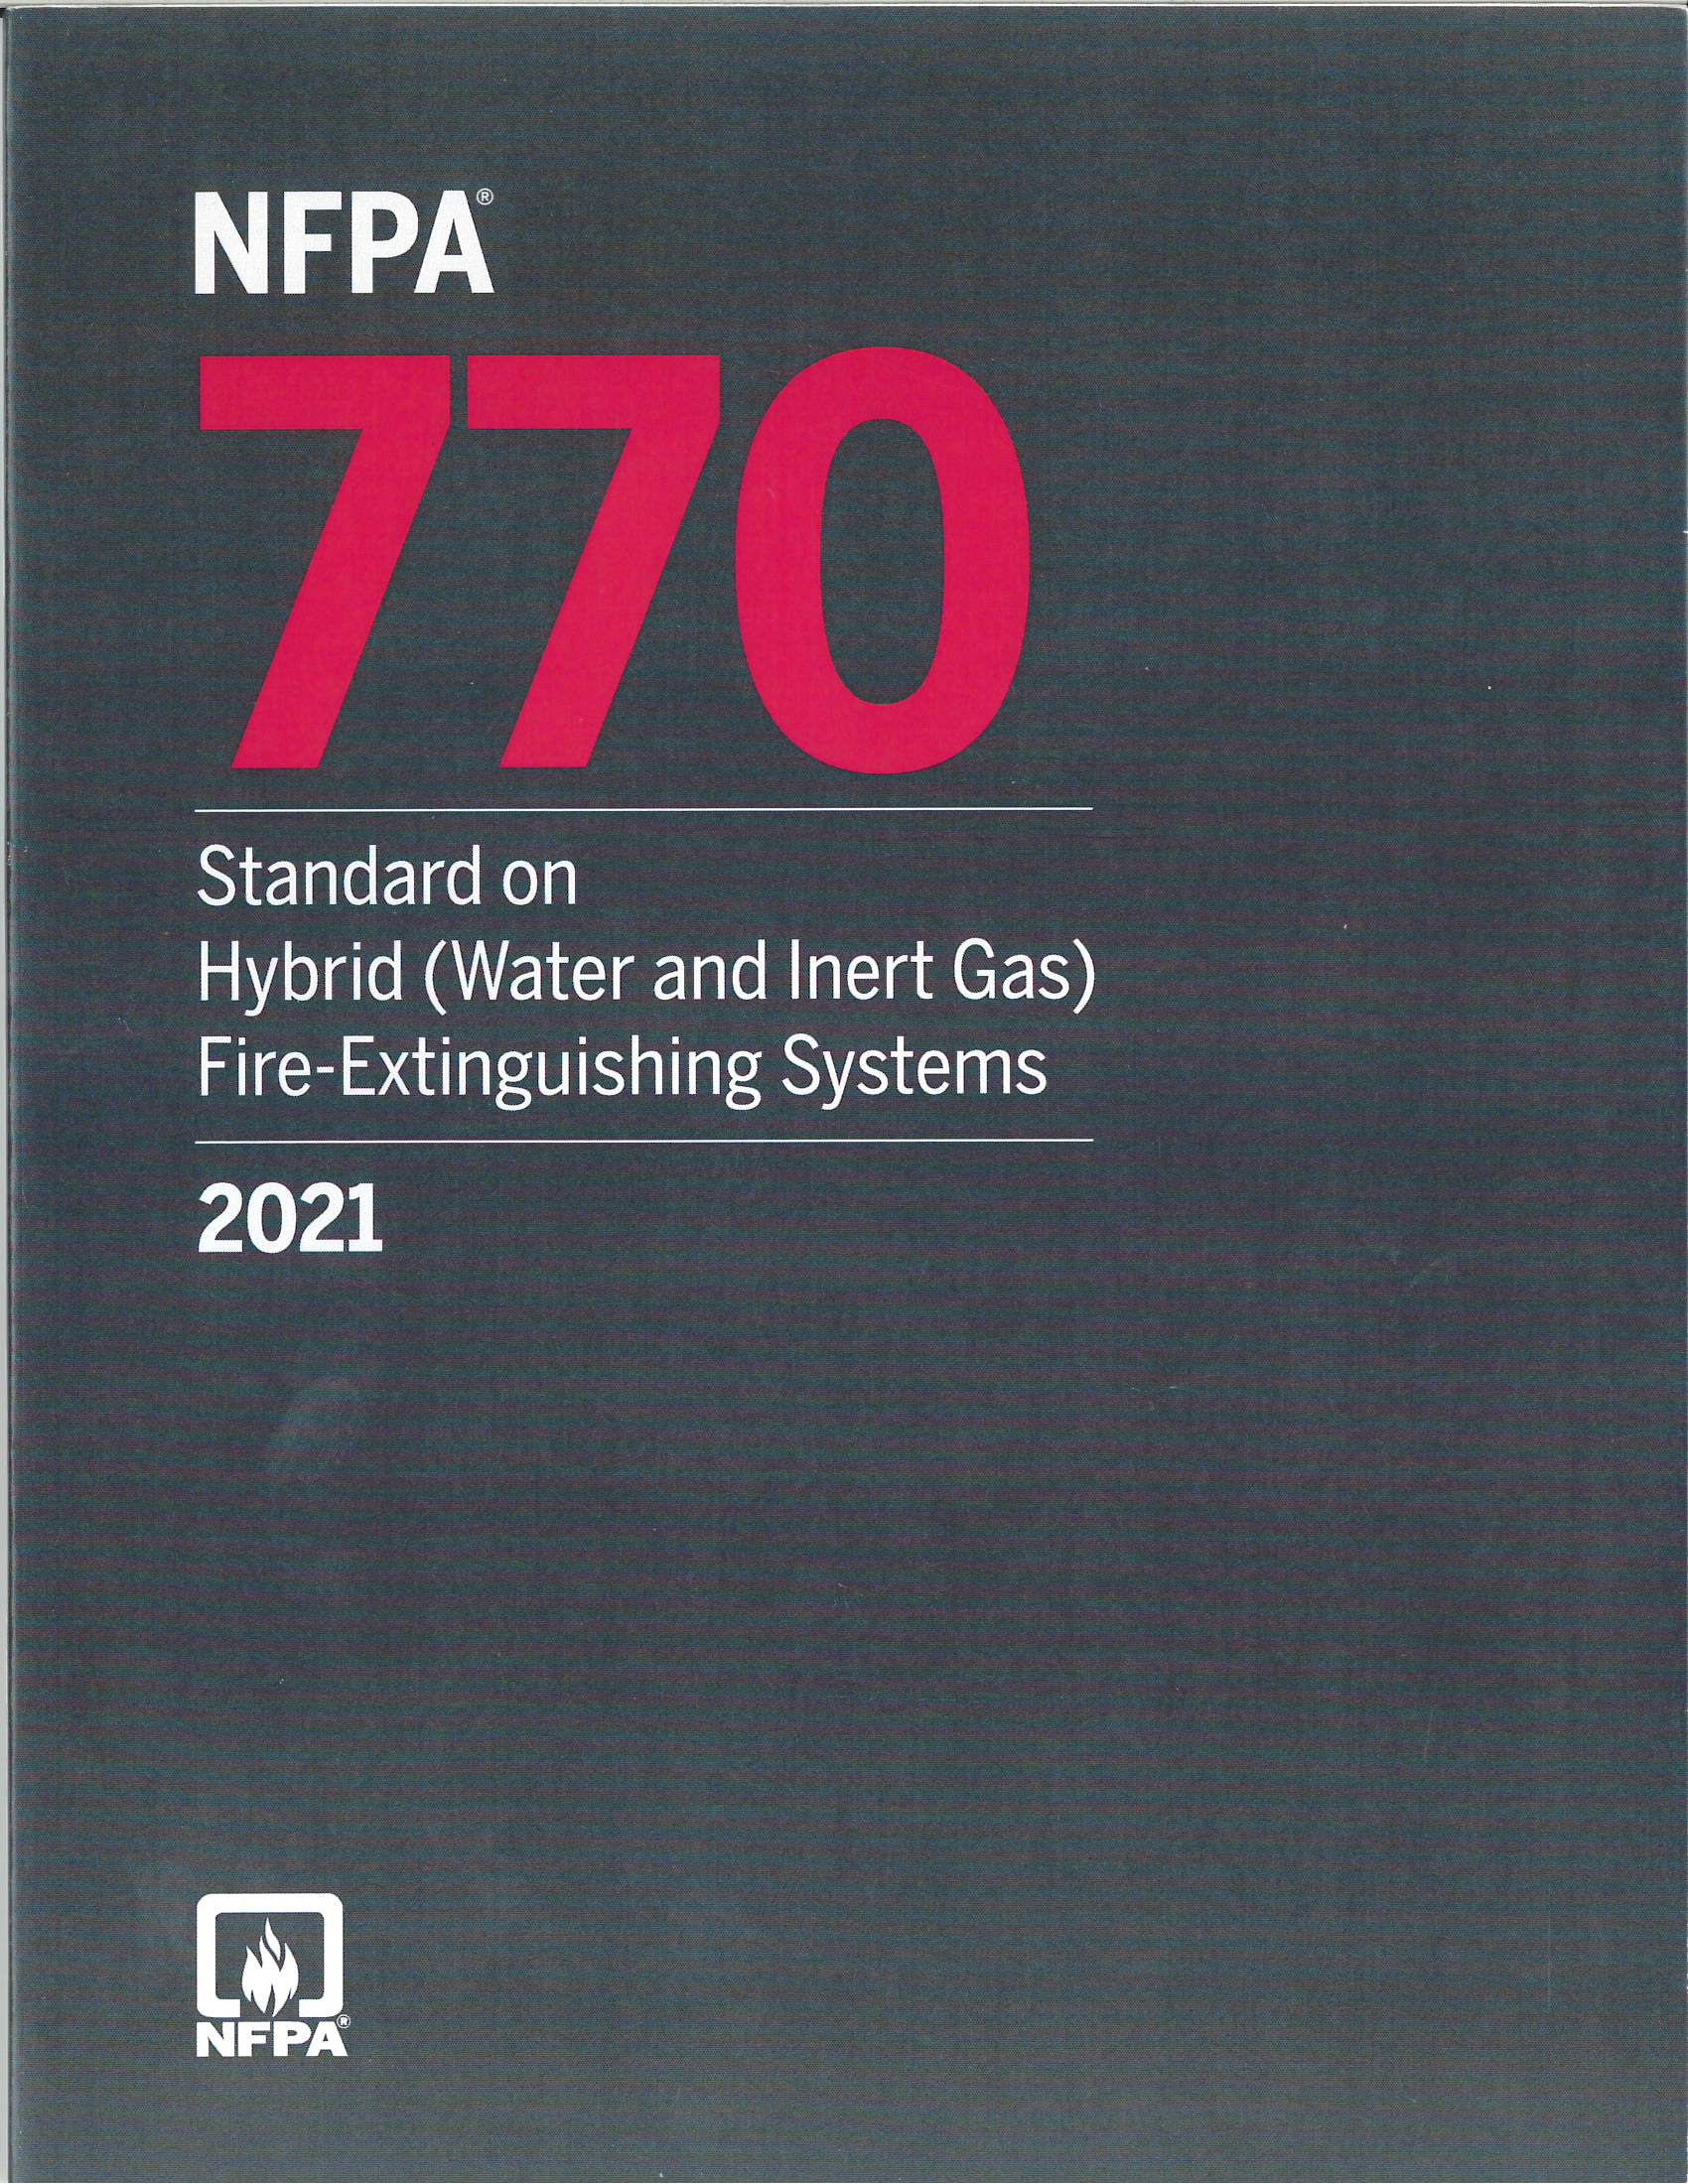 NFPA 770